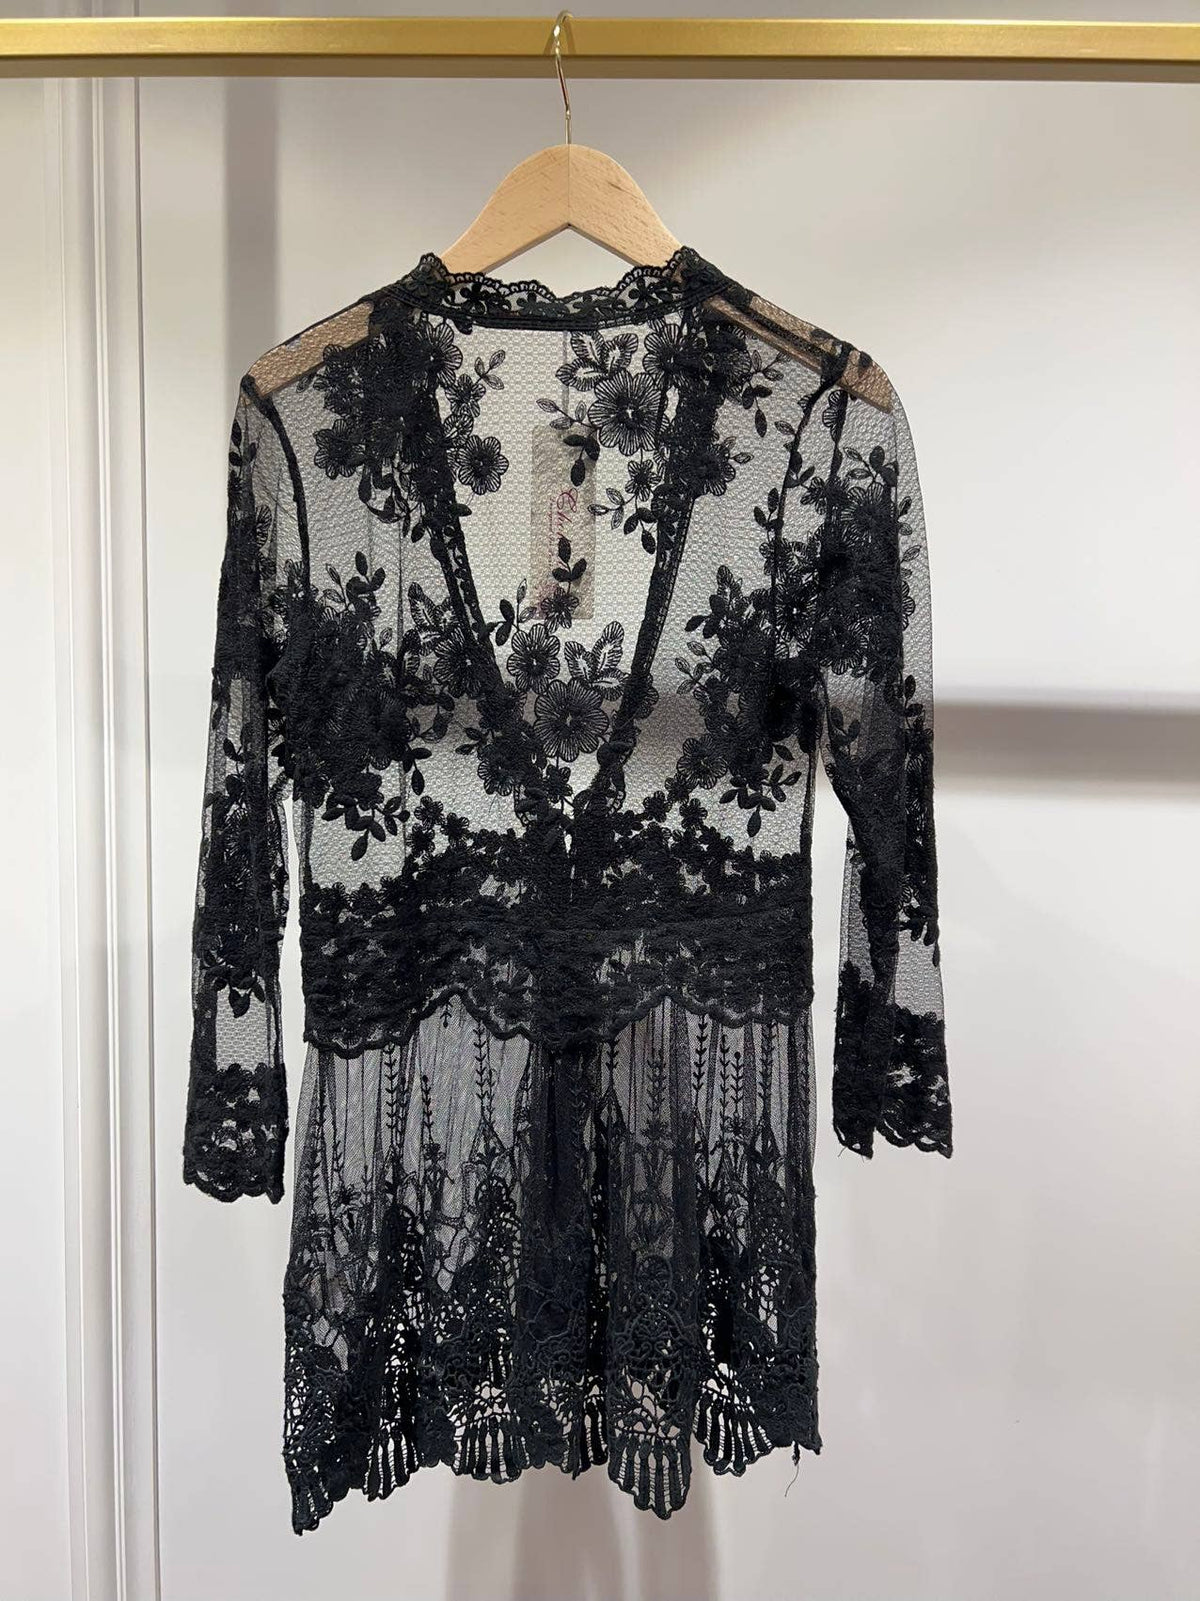 Black Floral Lace Bolero Vest - Premium Tops from CHOKLATE PARIS - Just $30! Shop now at Ida Louise Boutique